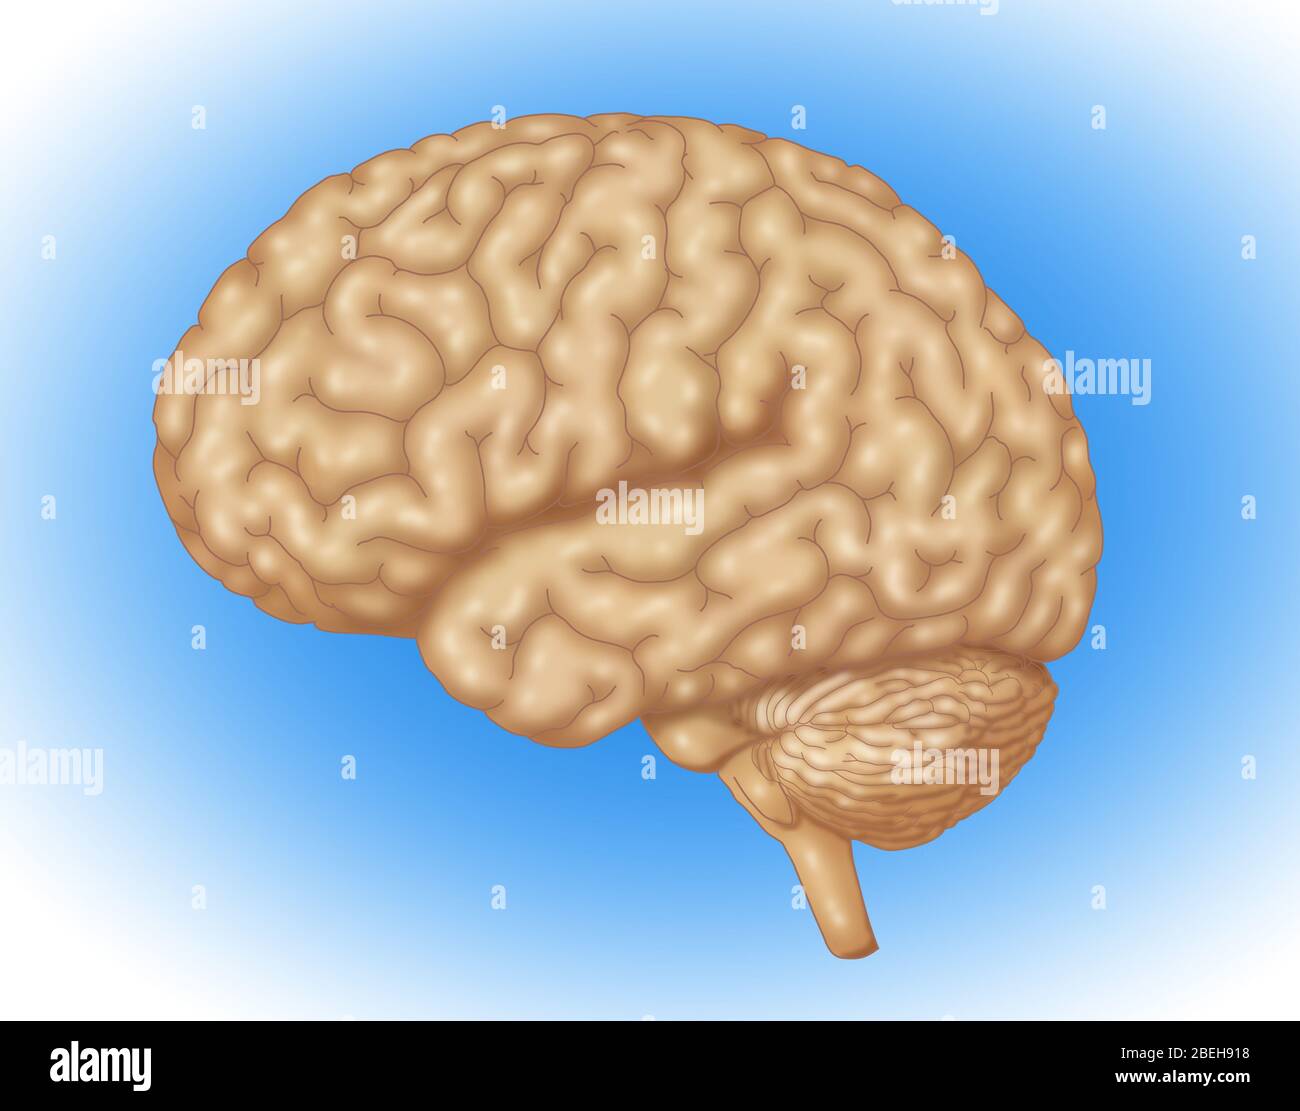 Illustrazione di un cervello umano normale. Foto Stock